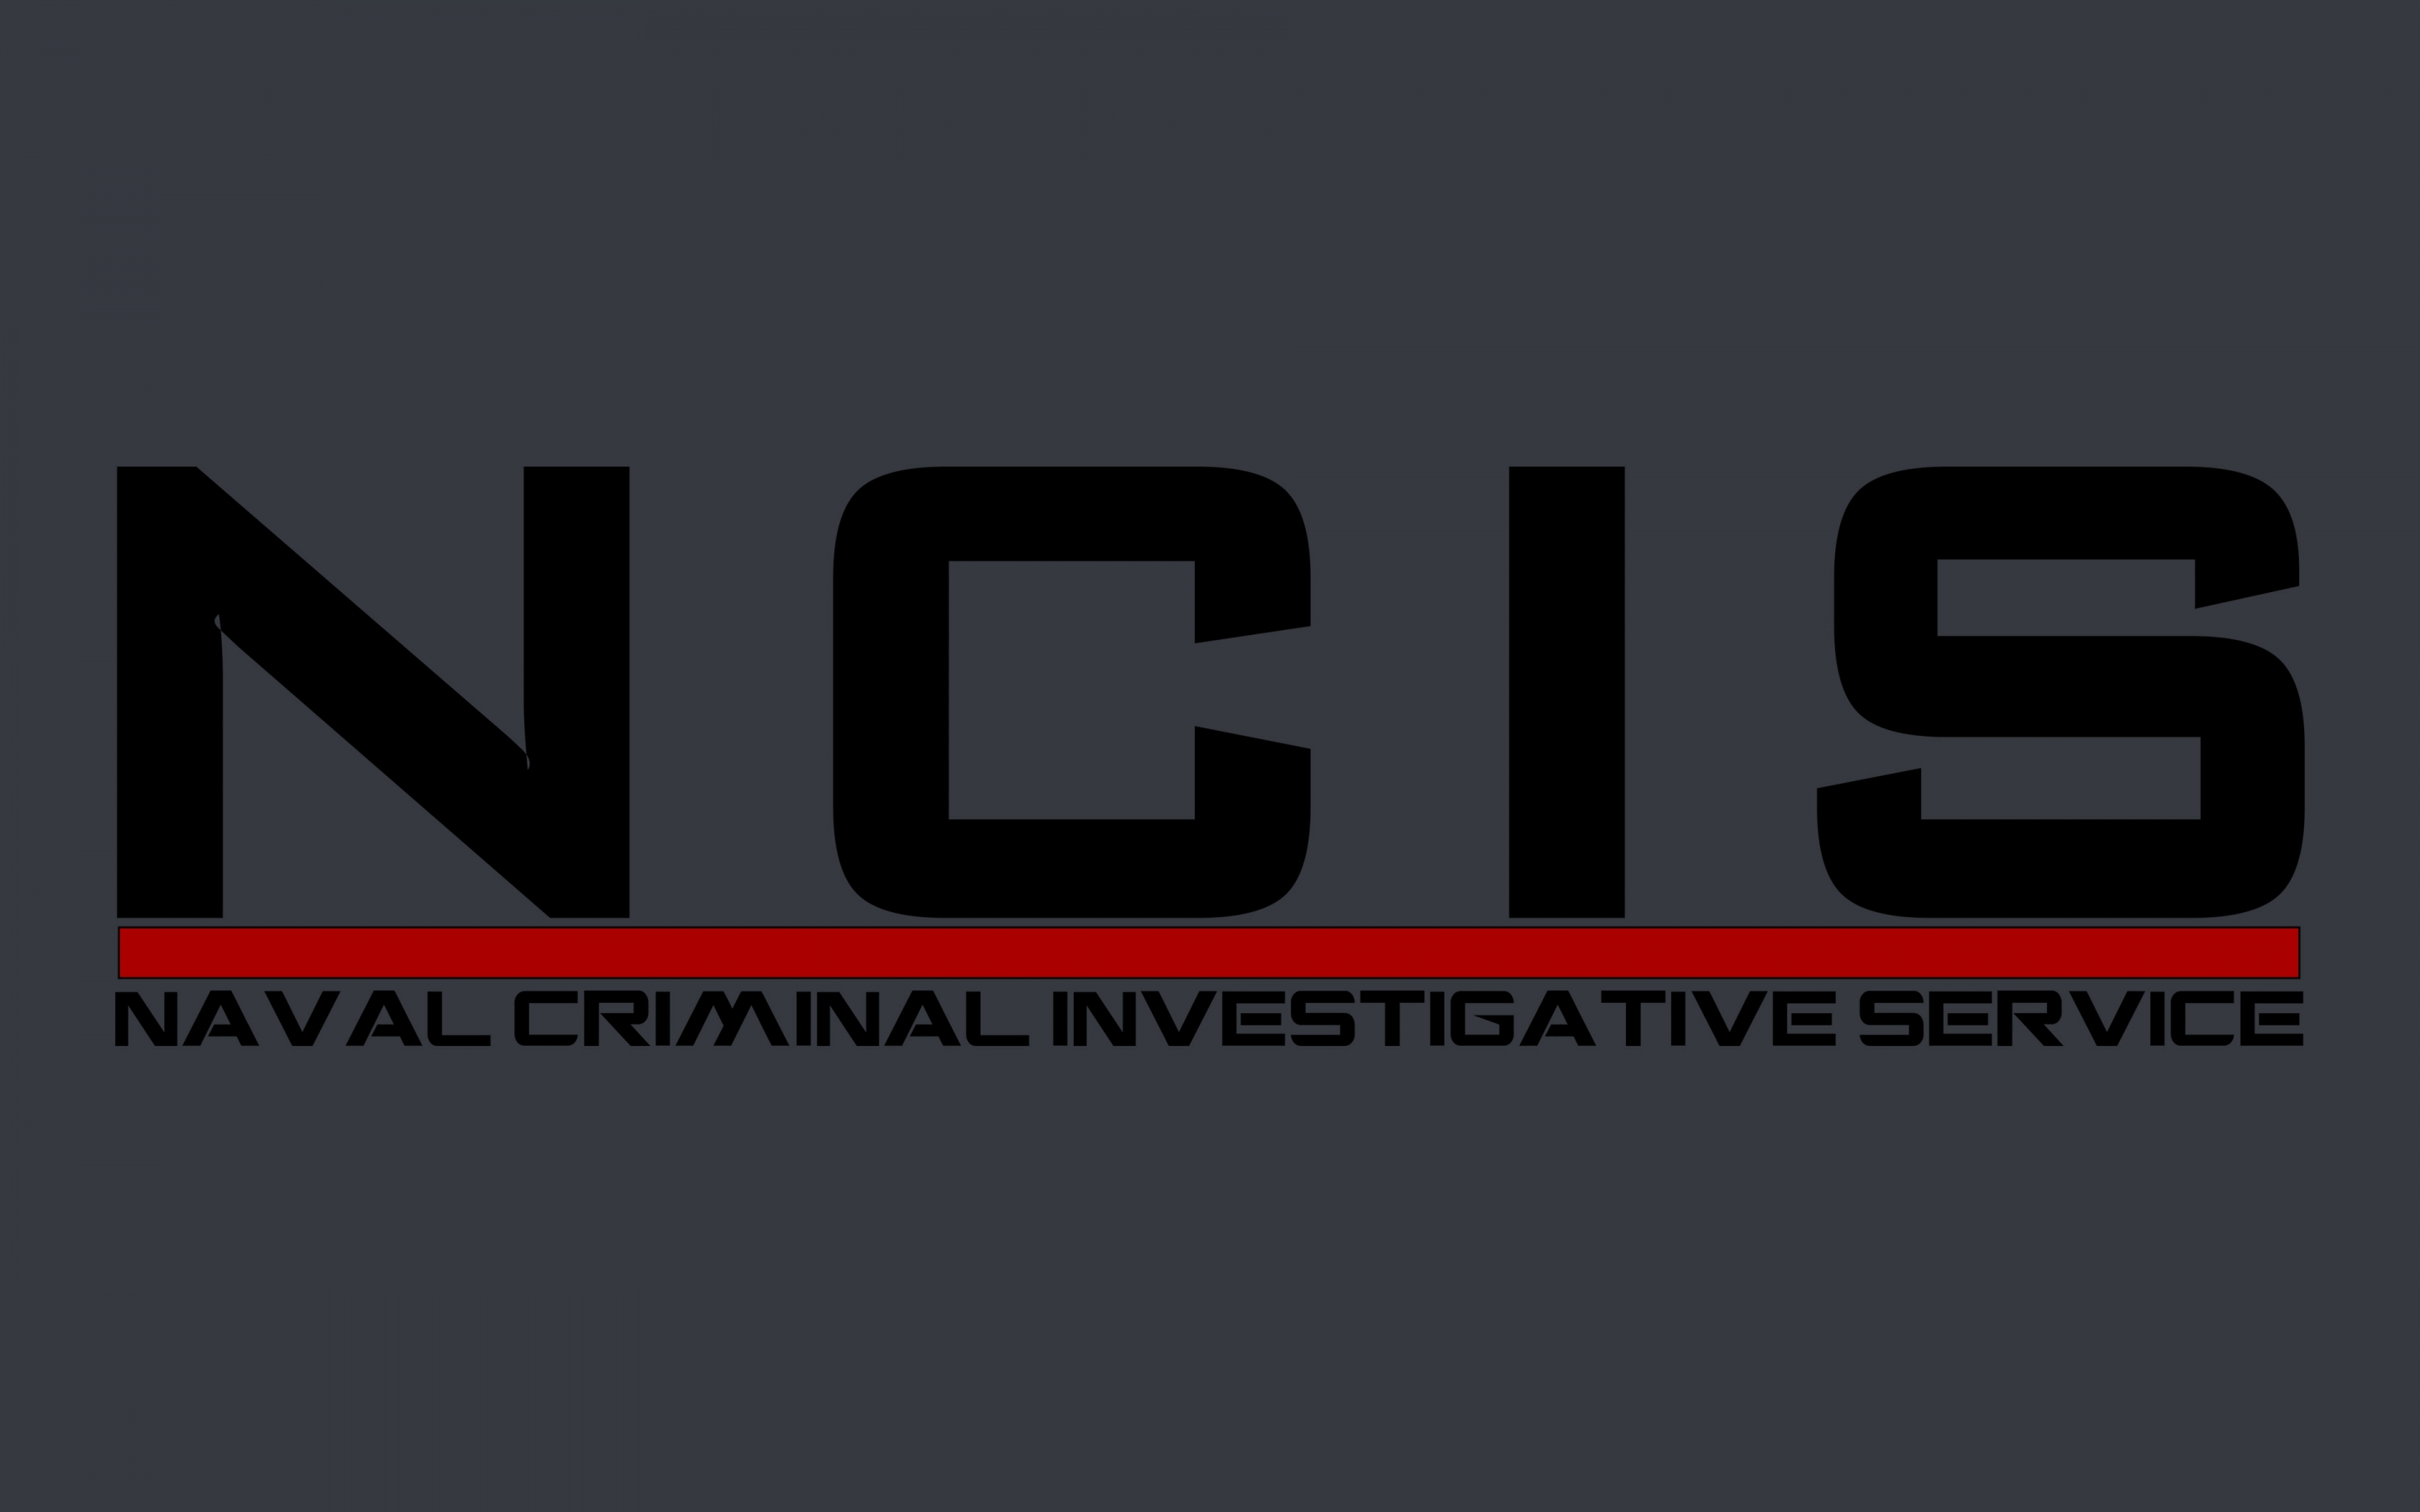 NCIS Logo for 2880 x 1800 Retina Display resolution